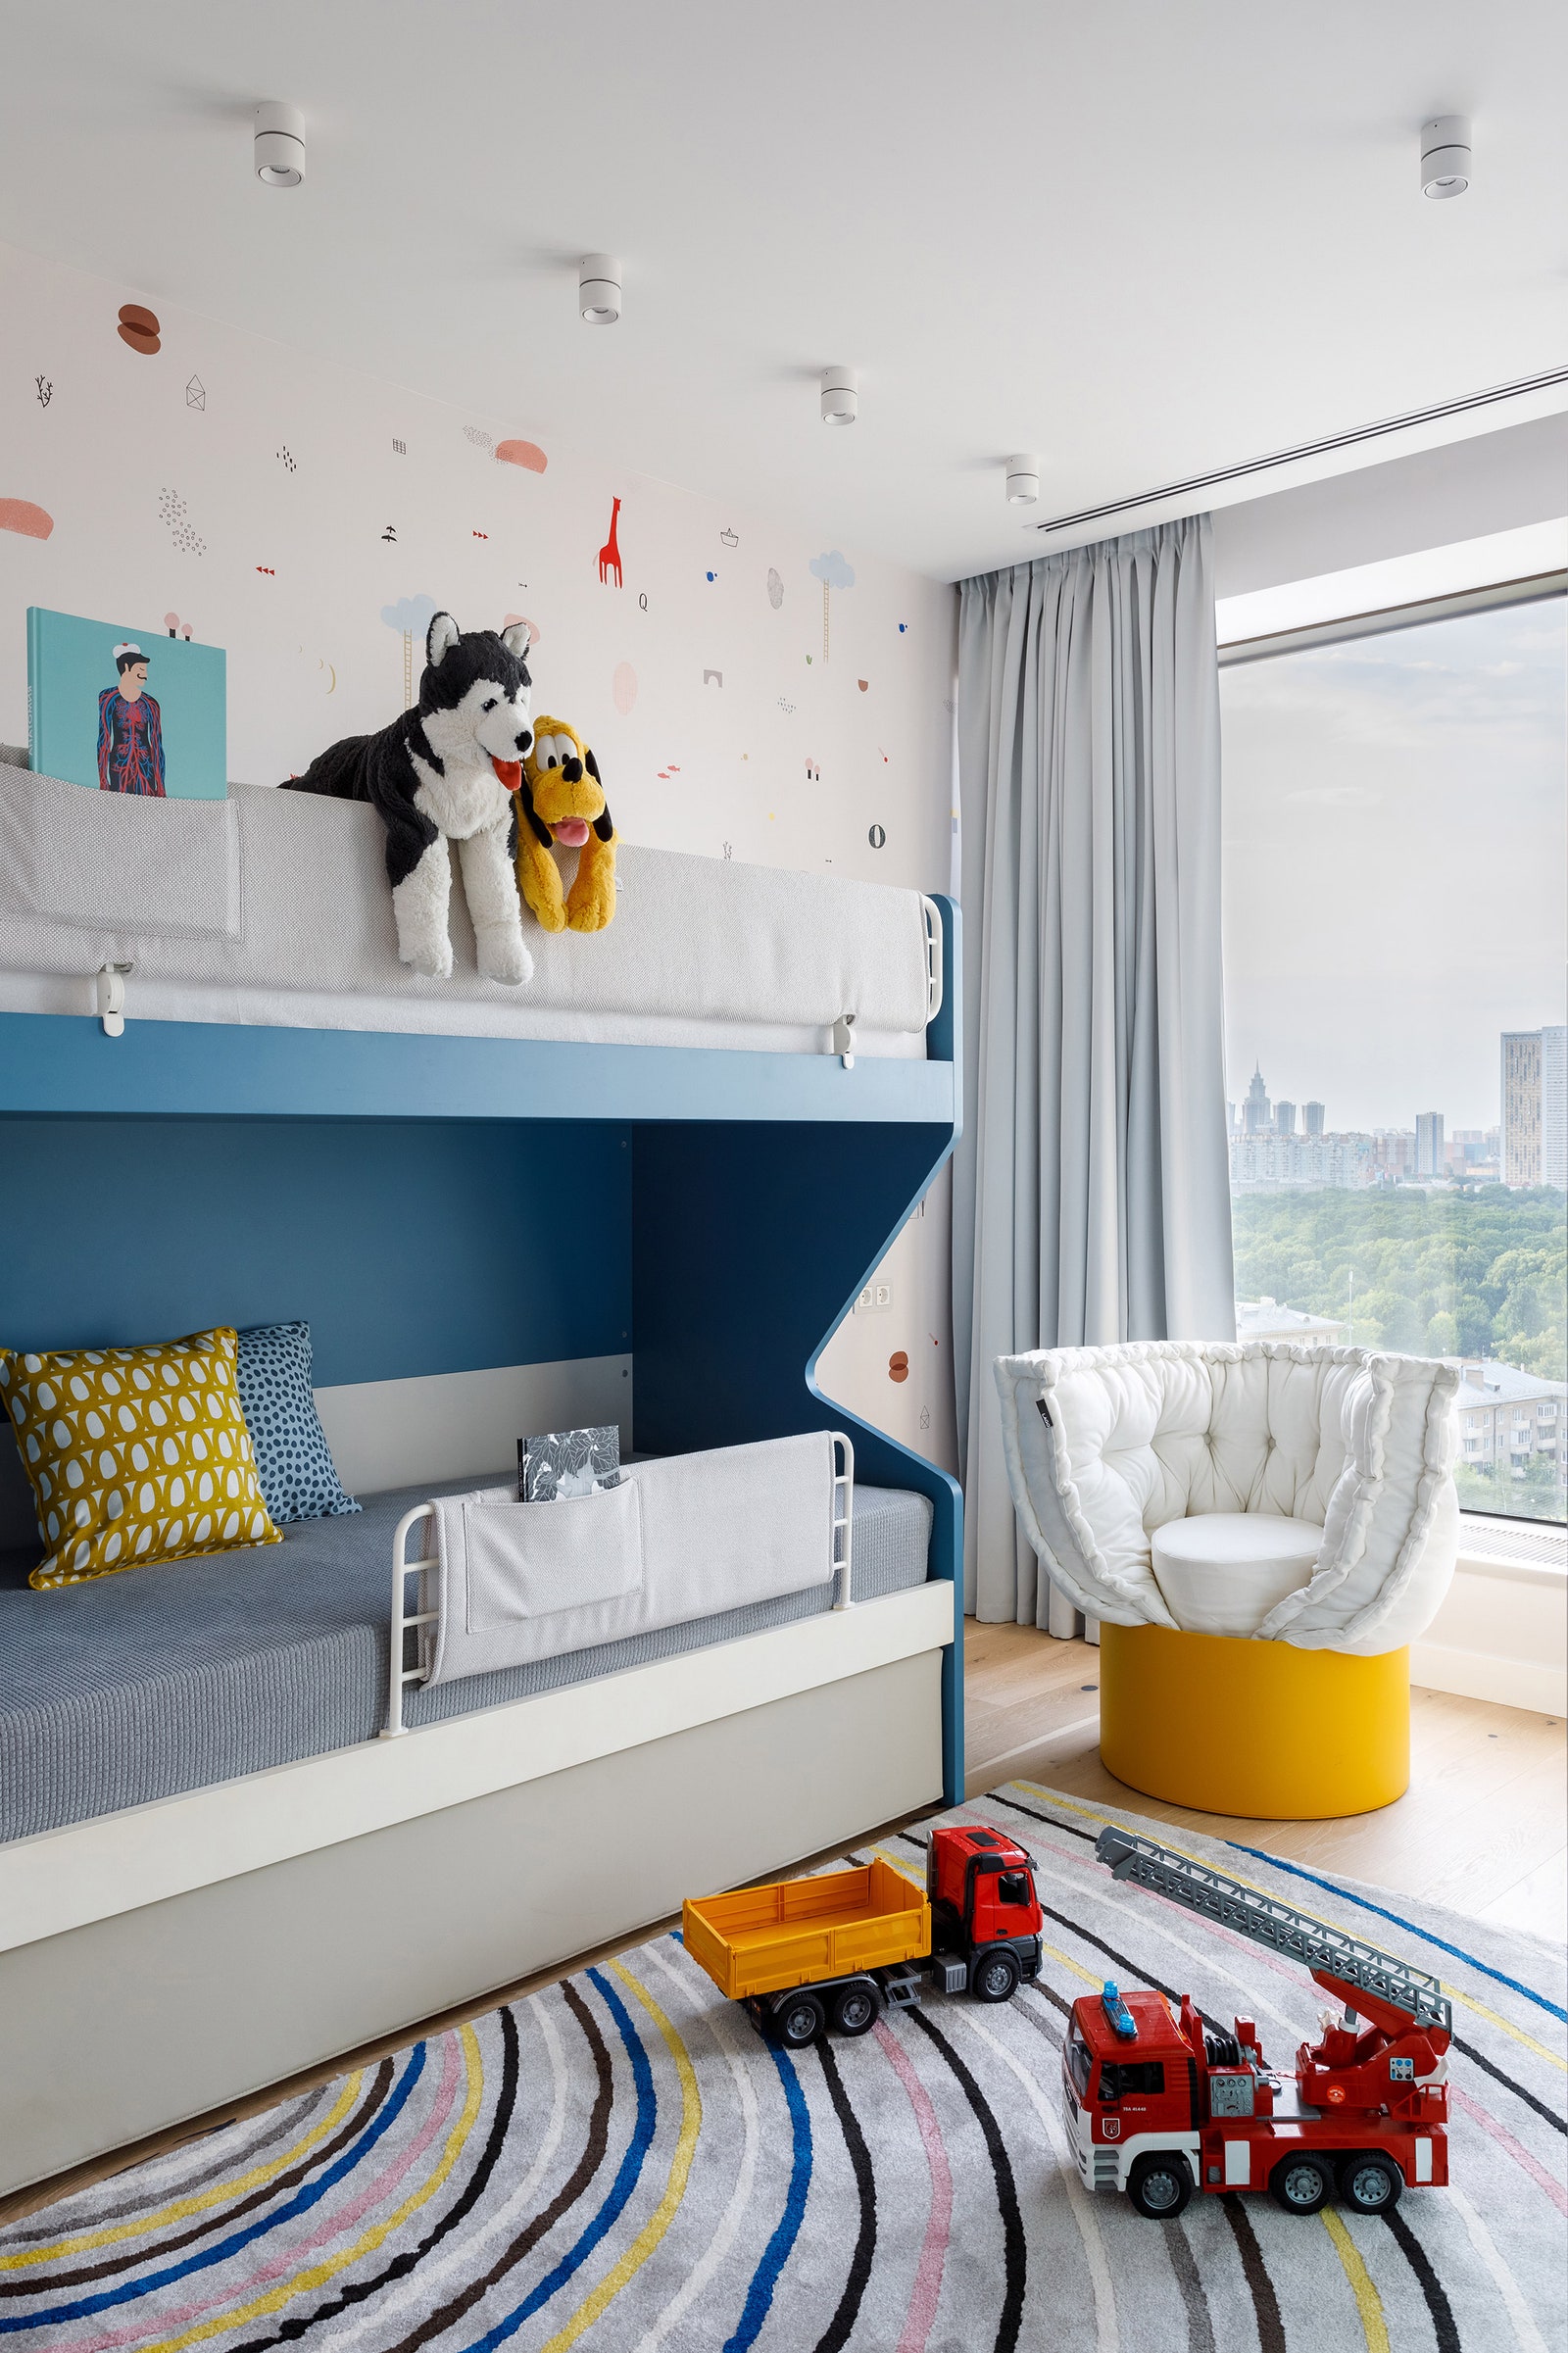 Детская. Кровать обои Nidi пуфы Milano Home Concept подушки Designboom желтое кресло Lago.